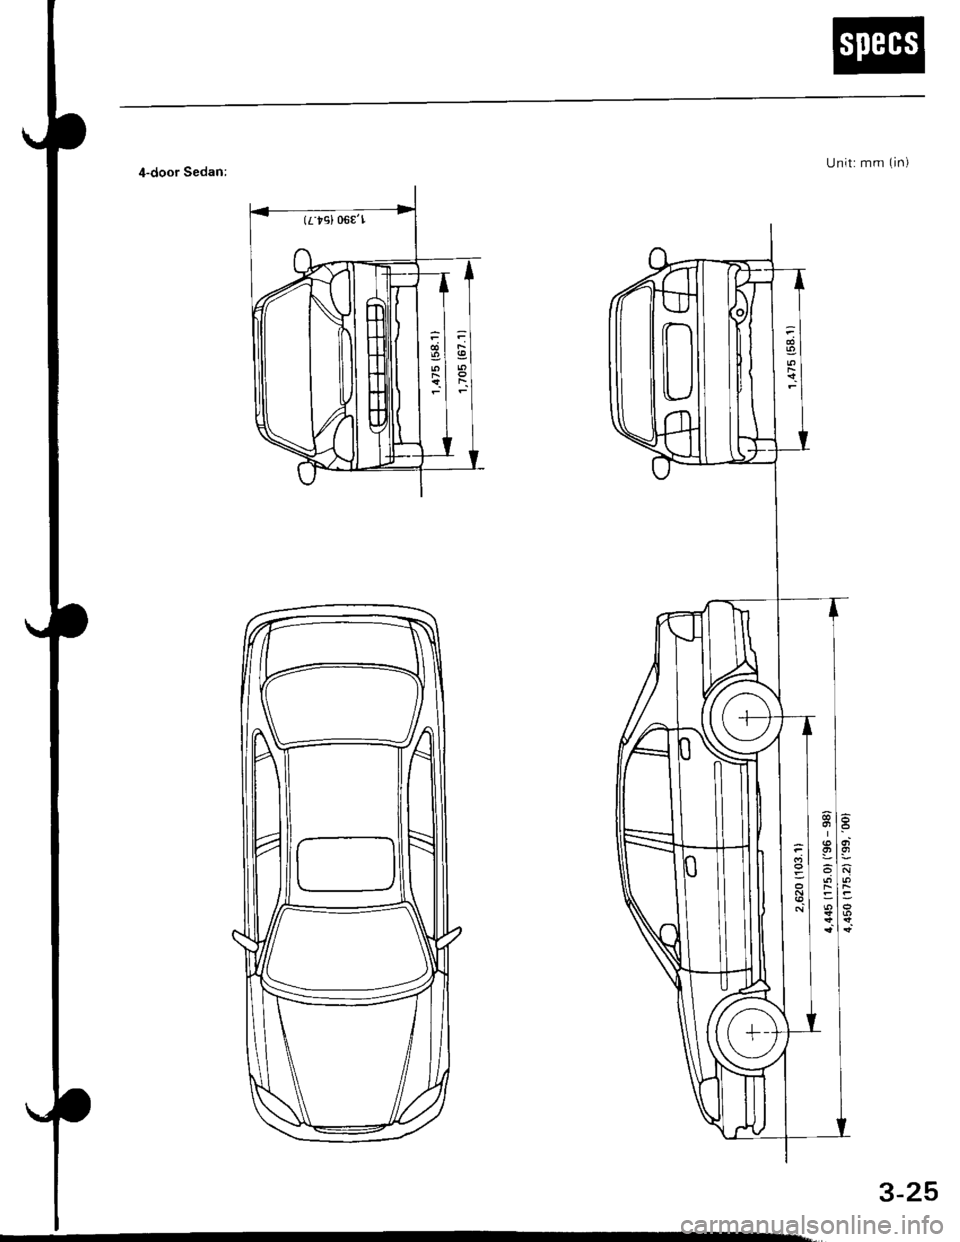 HONDA CIVIC 1998 6.G Repair Manual (rtsl 06€l
U nit: mm (in)4-door Sedan:
3-25 